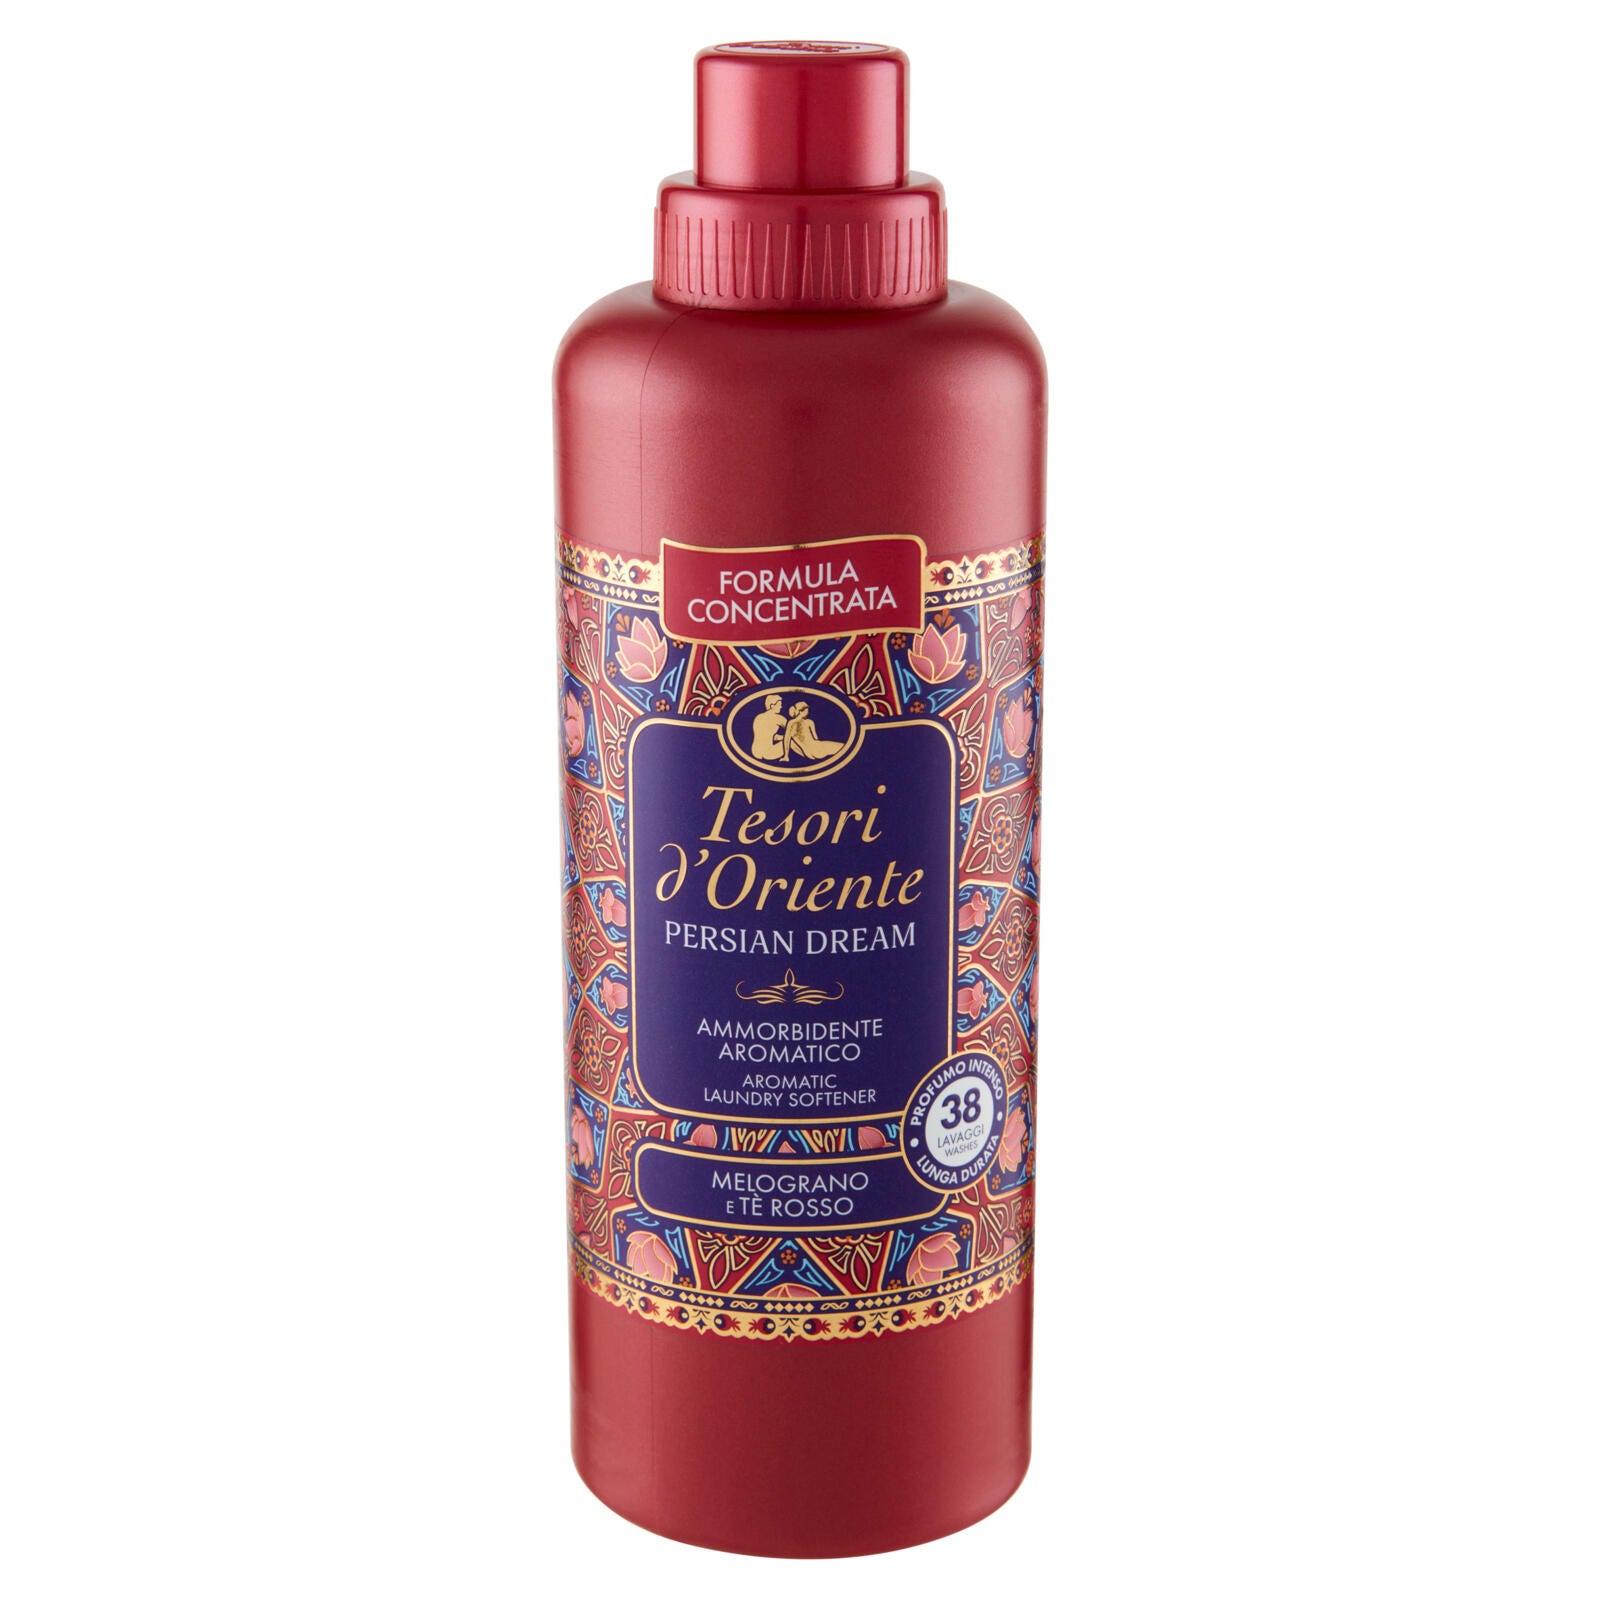 Tesori d'Oriente Persian Dream Ammorbidente Aromatico Melograno e Tè Rosso  760 ml ->